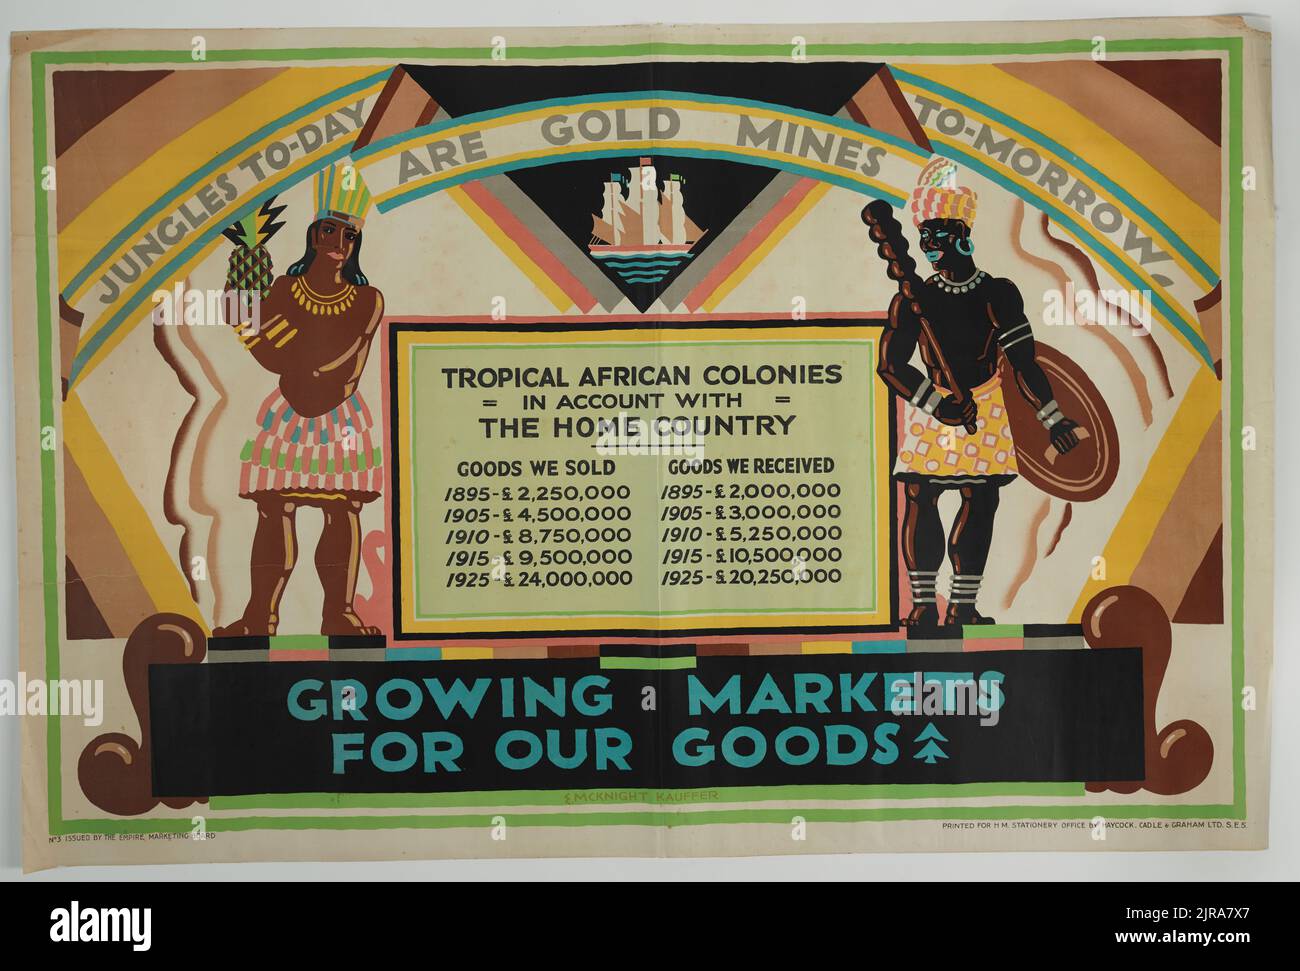 Poster, 'giungle to-day are Gold Mines to-Morrow', 1927, Regno Unito, di Edward McKnight Kauffer, Haycock, Cadle e Graham Ltd., H.M. Stationery Office, Empire Marketing Board. Trovato nella collezione, 2012. Foto Stock